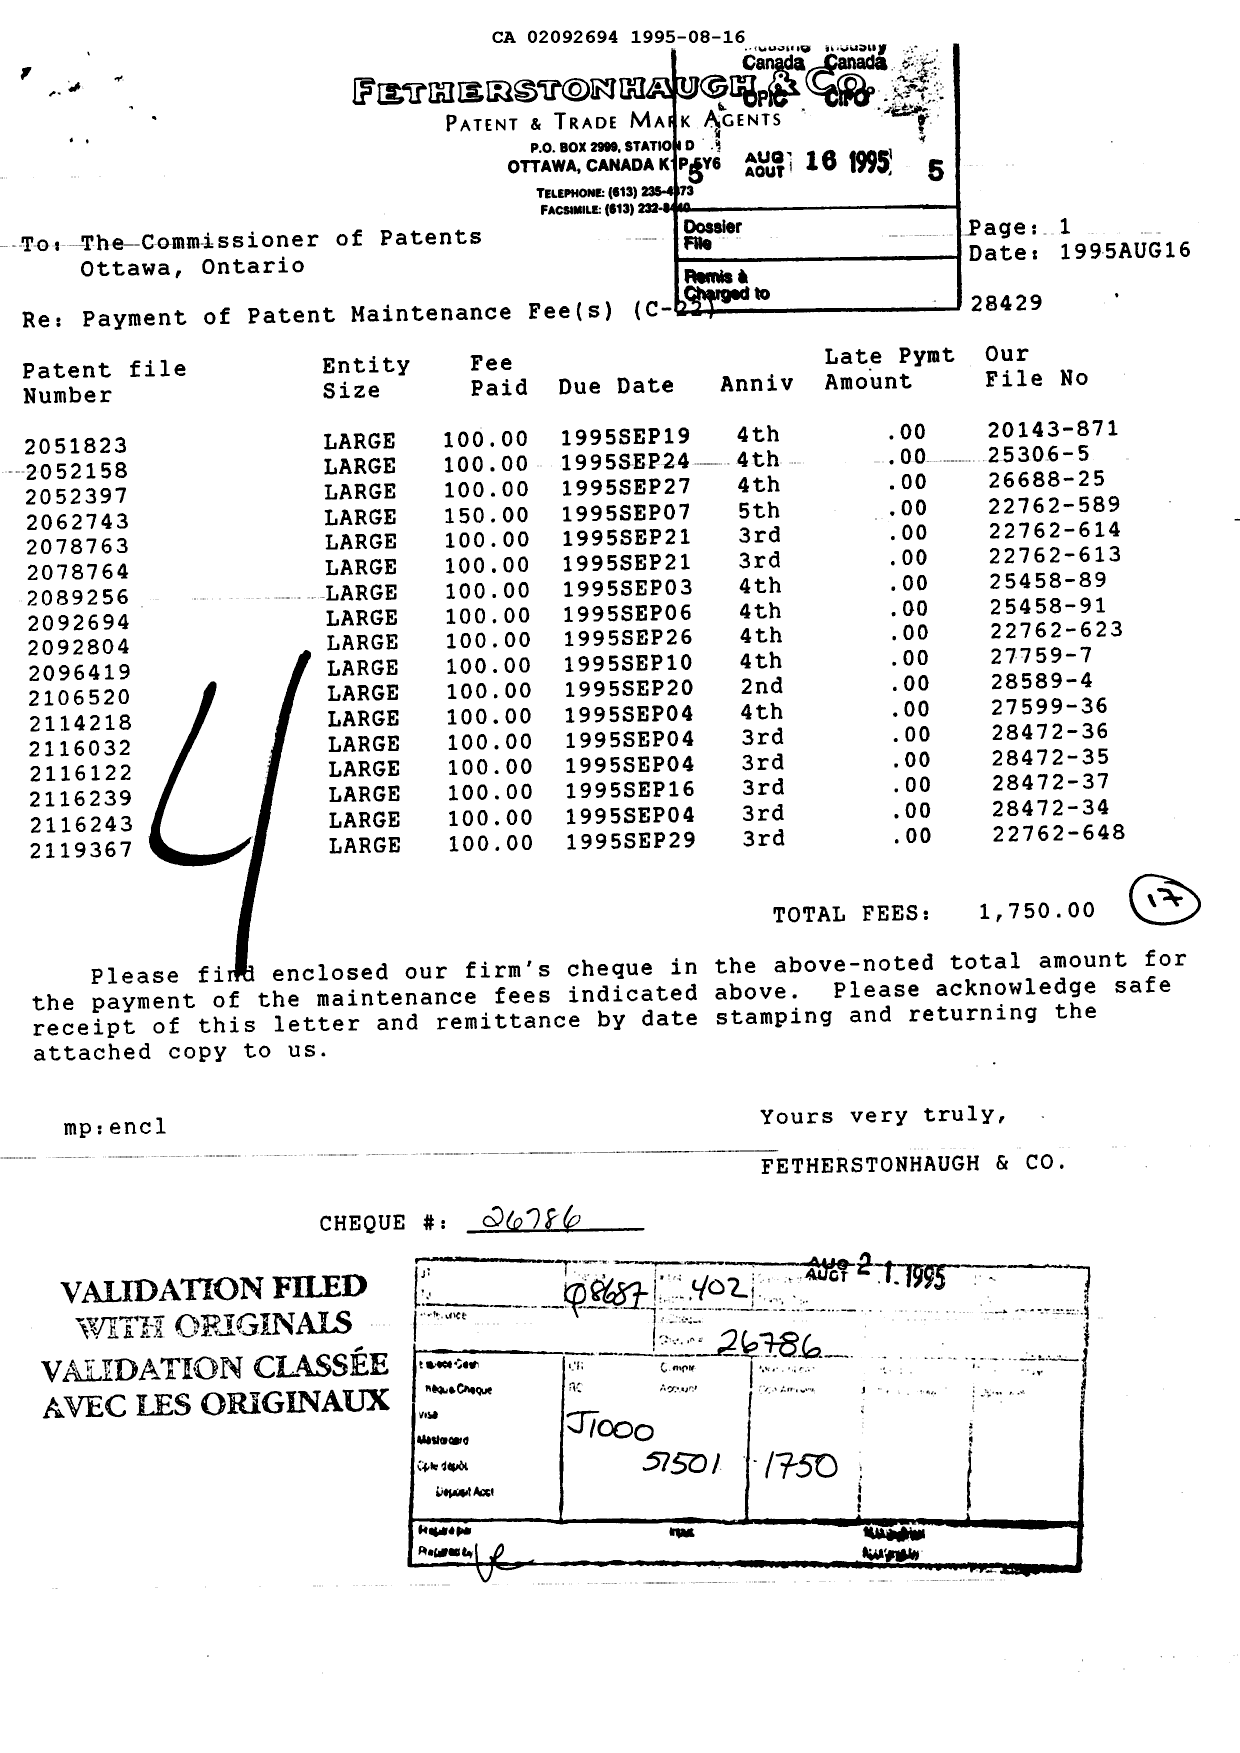 Document de brevet canadien 2092694. Taxes 19941216. Image 1 de 1